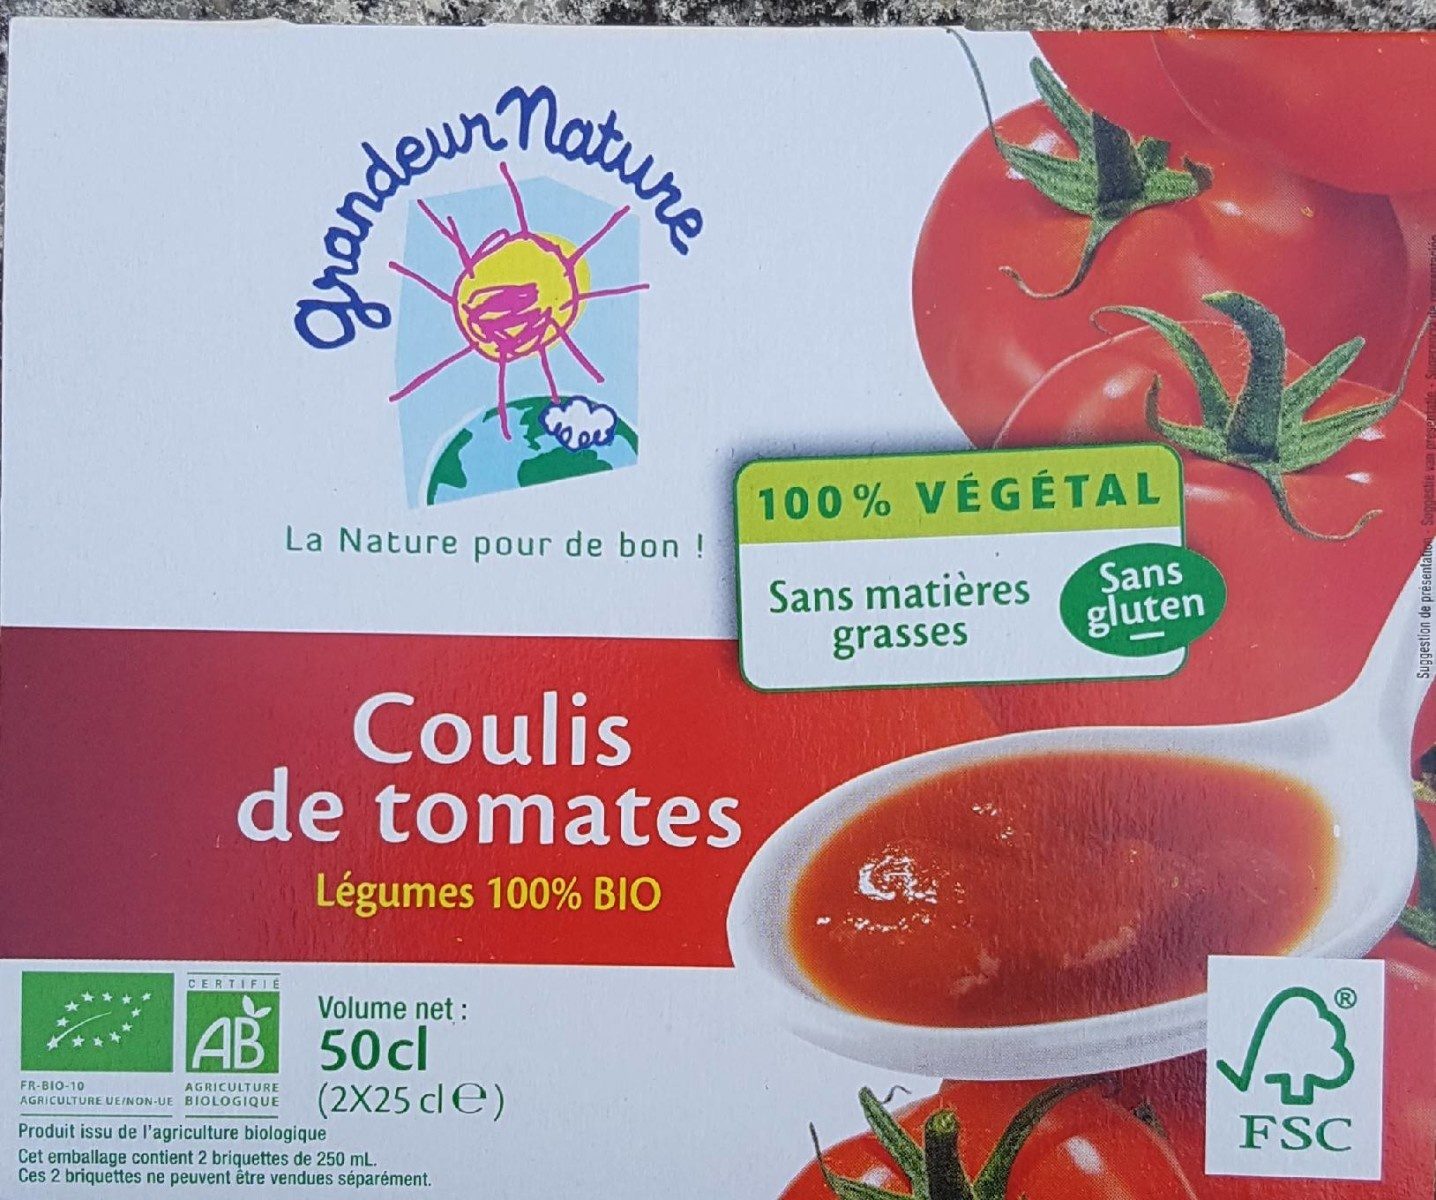 Coulis de tomates - légumes 100% BIO - Product - fr